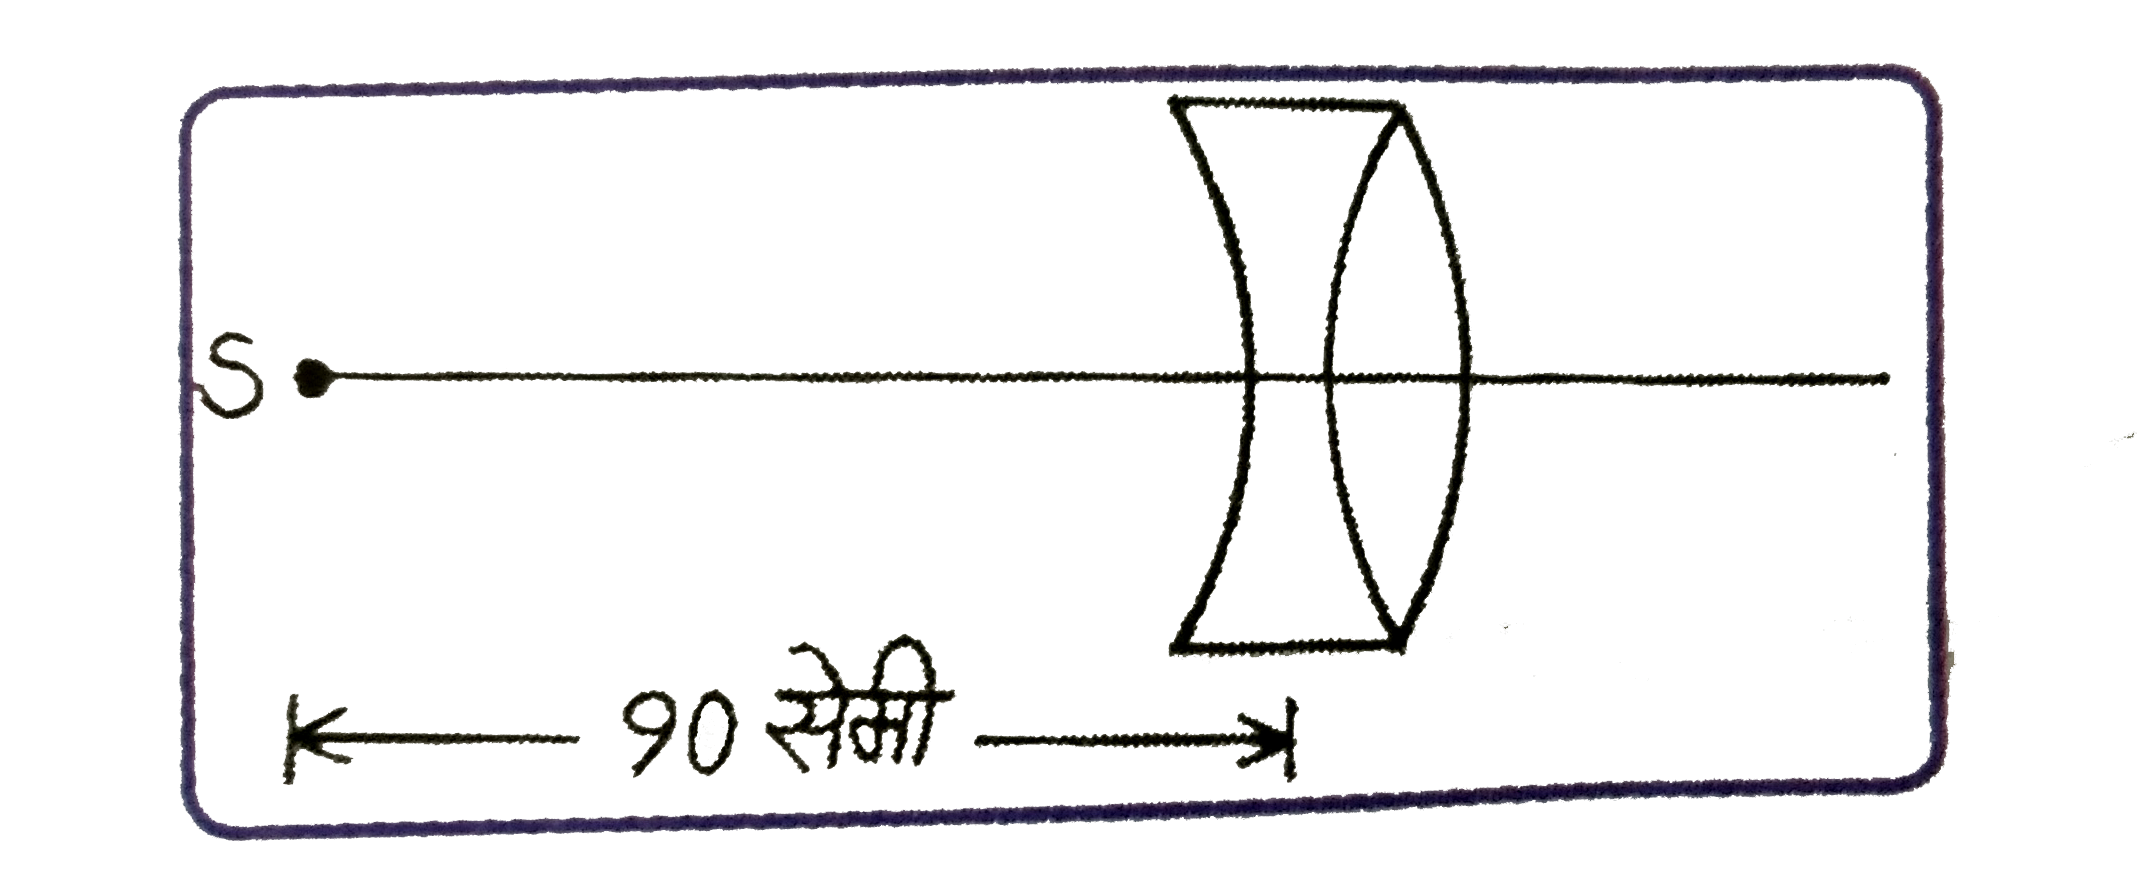 दिए गए चित्र में 20 सेमी वक्रता त्रिज्या वाले द्वि-अवतल लेन्स तथा द्वि-उत्तल लेन्स सम्पर्क में रखे है | लेंसों के अपवर्तनांक  क्रमशः 4/3 तथा 3/2  है | संयुक्त लेन्स से बिंदु स्त्रोत S के प्रितबिम्ब की स्थिति ज्ञात कीजिए |